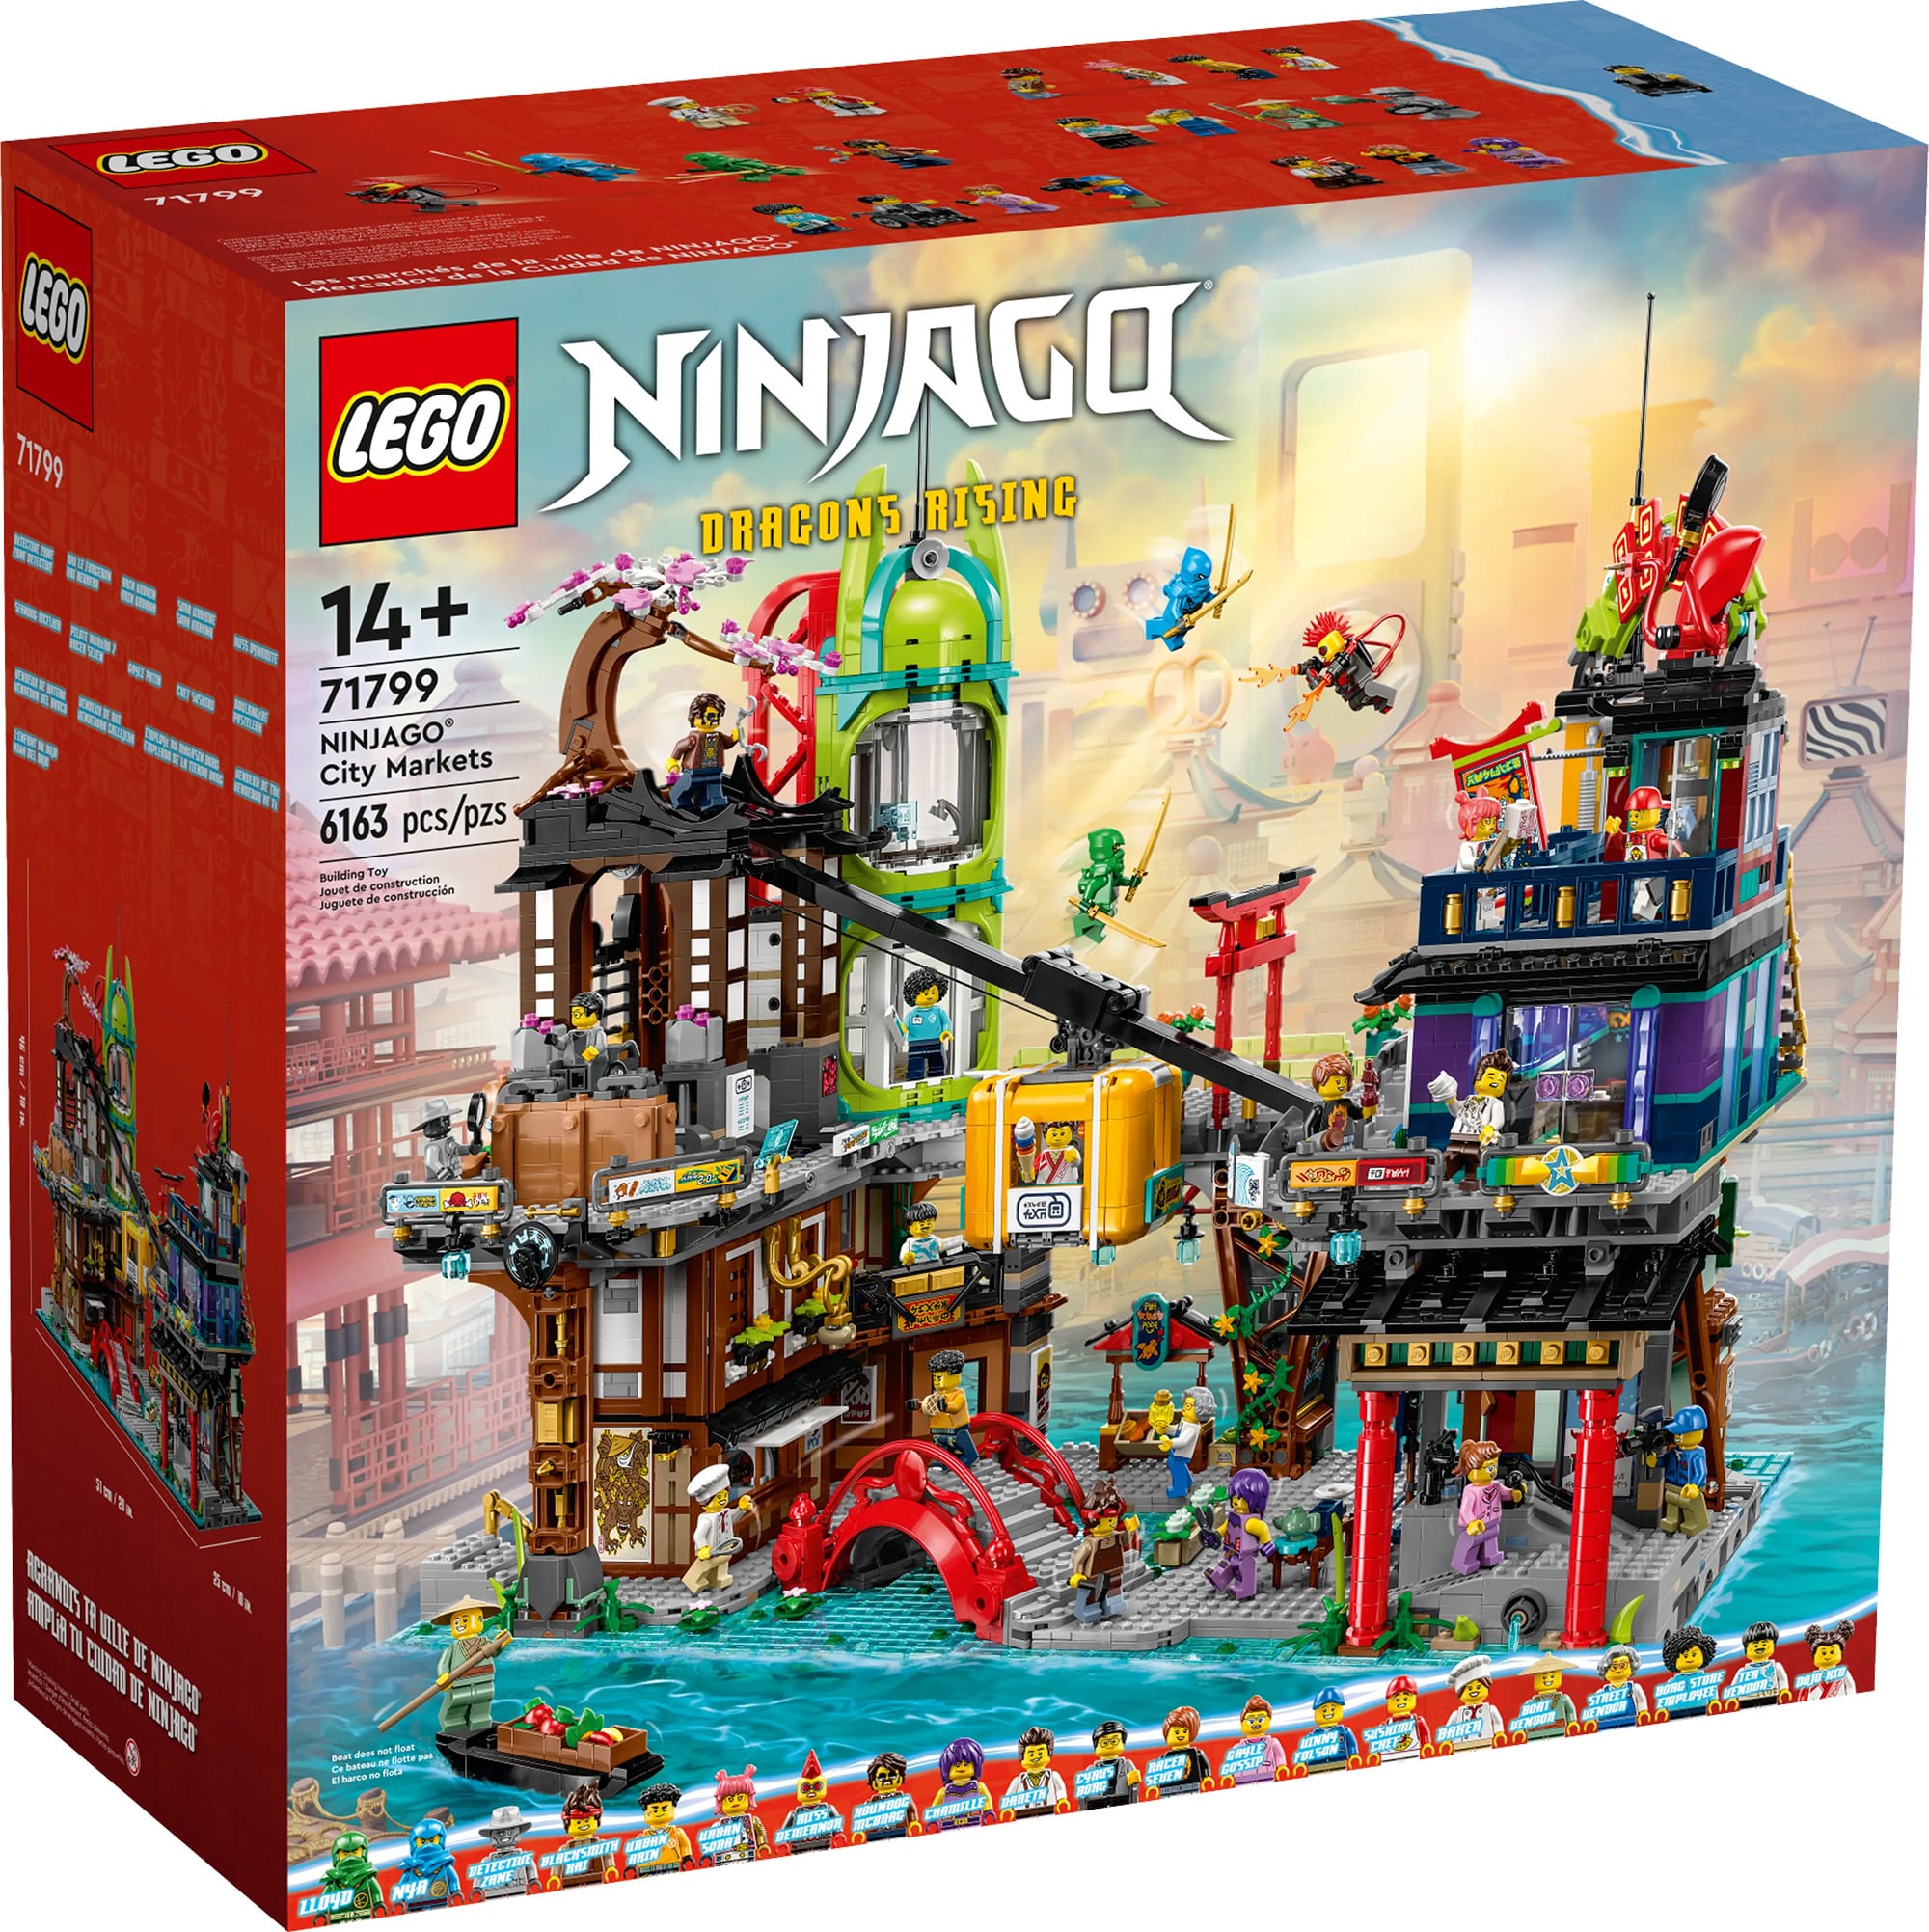 LEGO 71799 Ninjago City Markets 02